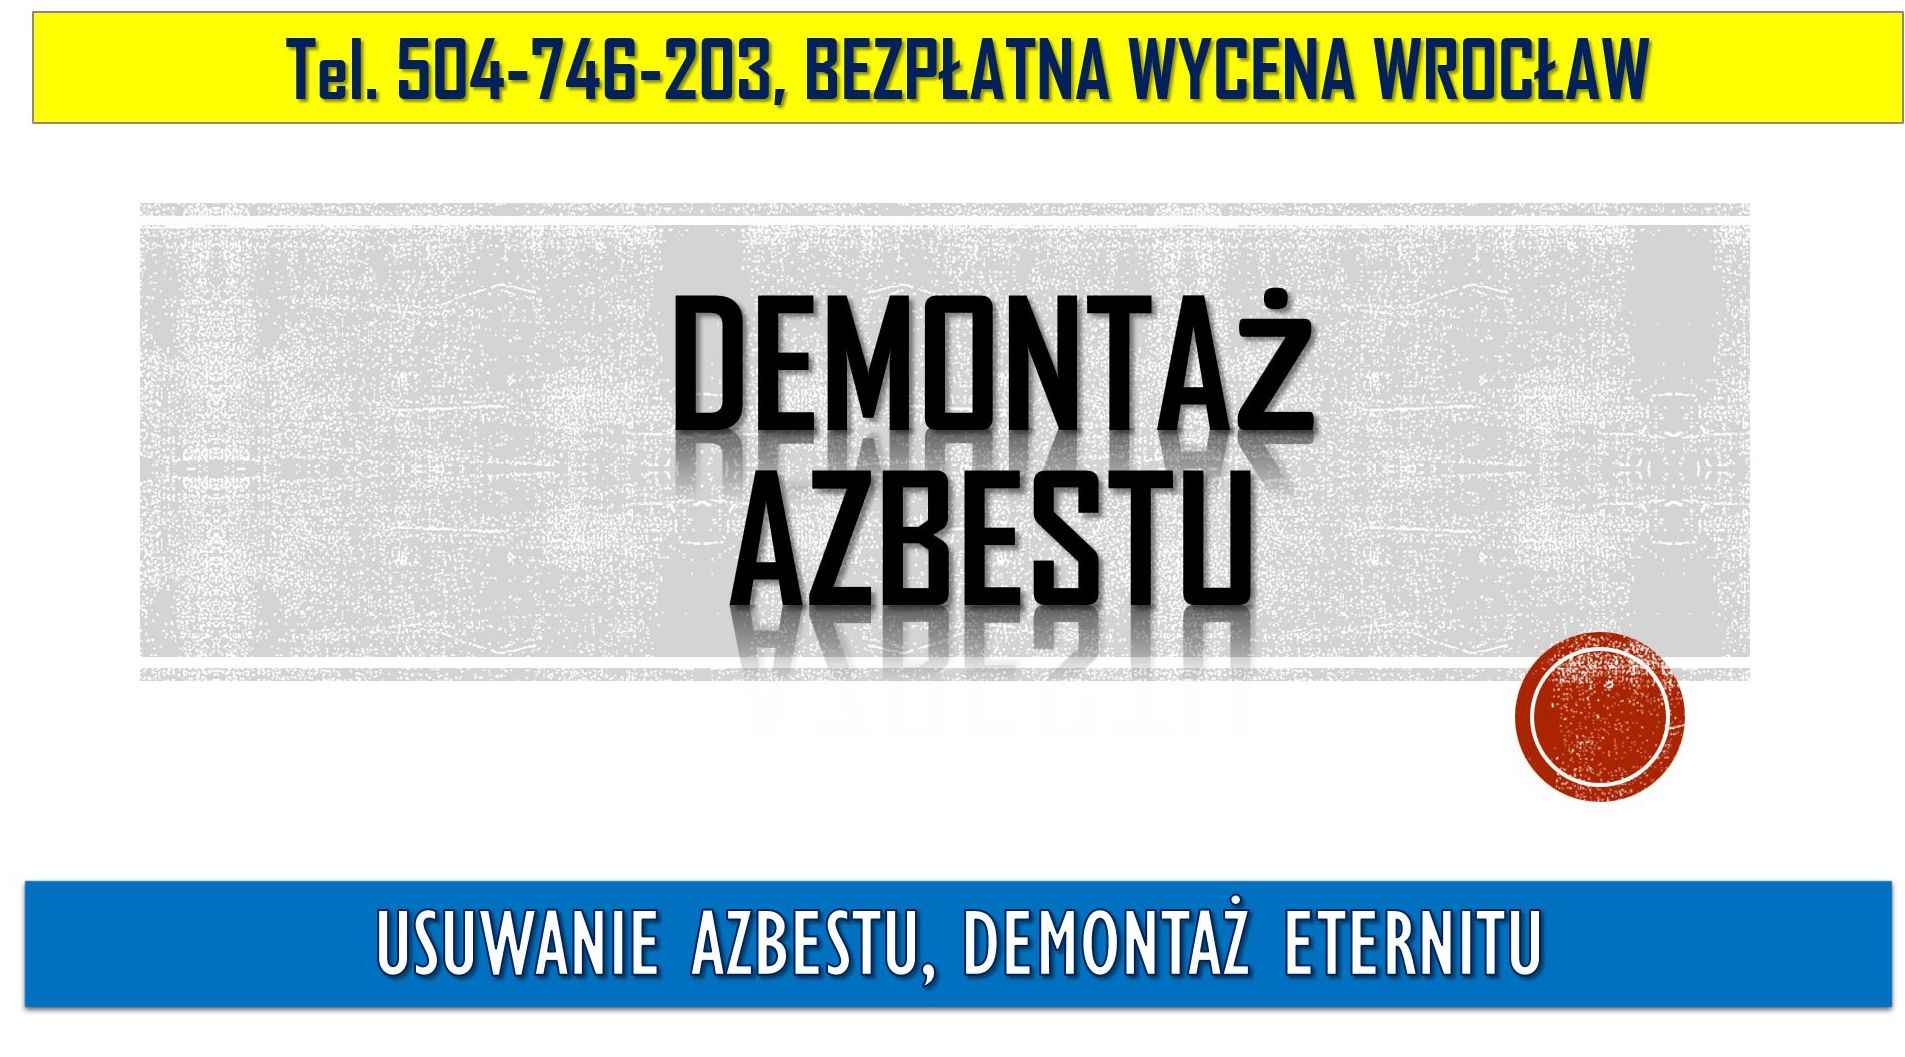 Usuwanie azbestu, Wrocław tel. 504-746-203, cena, demontaż eternitu. Psie Pole - zdjęcie 3